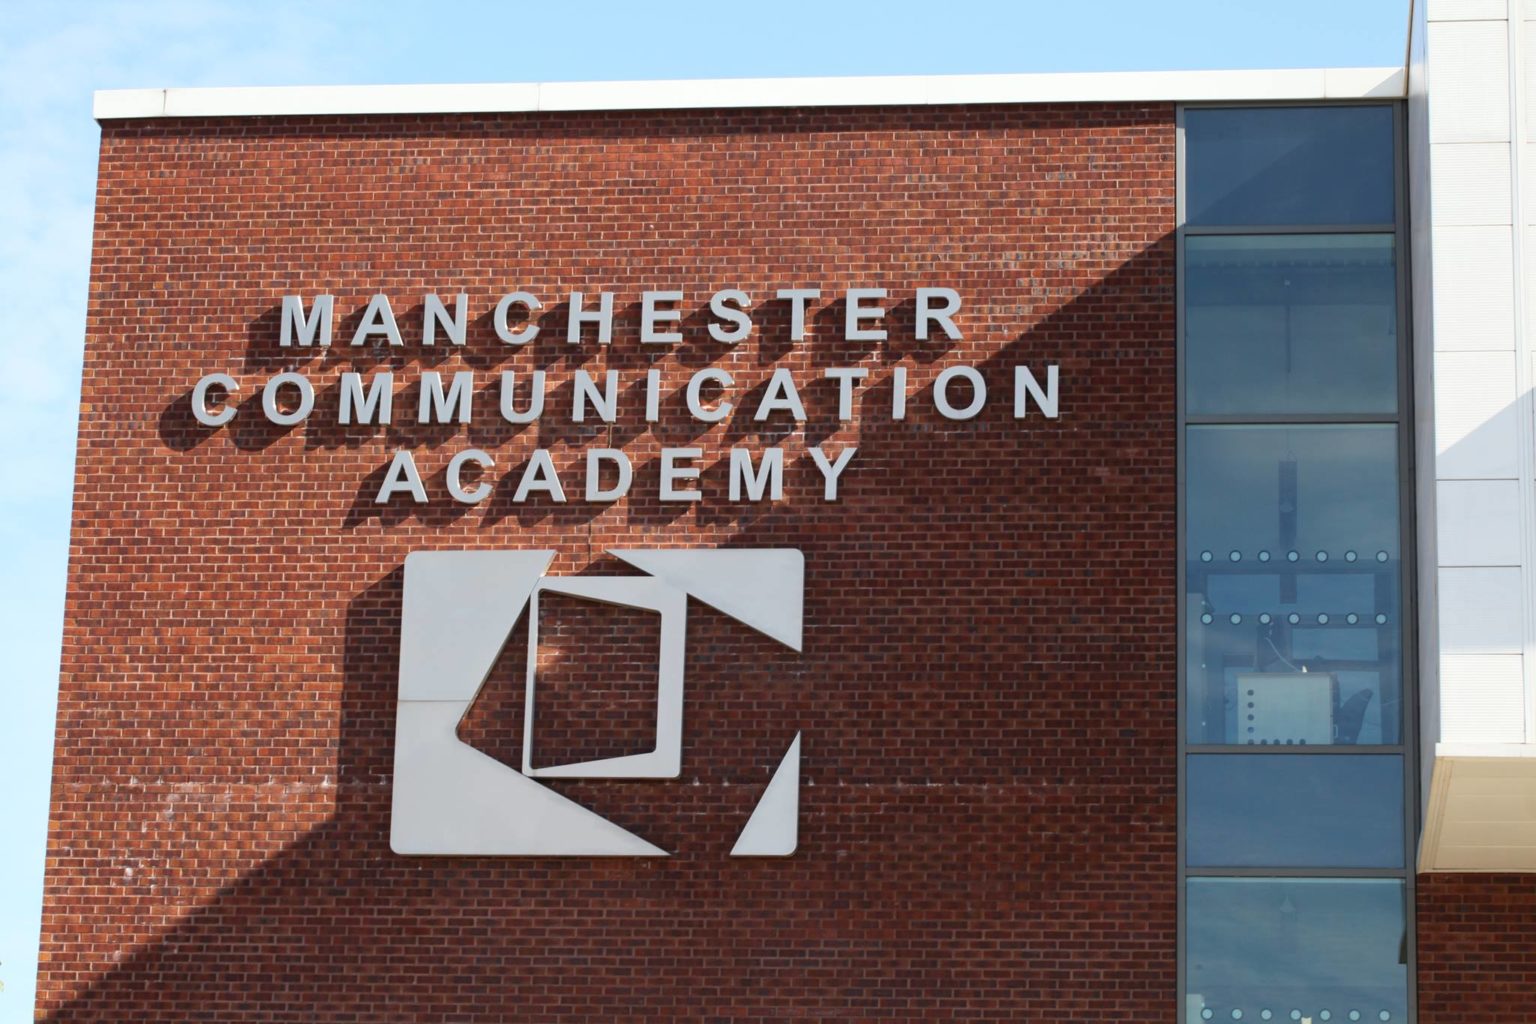 Manchester communication academy jobs